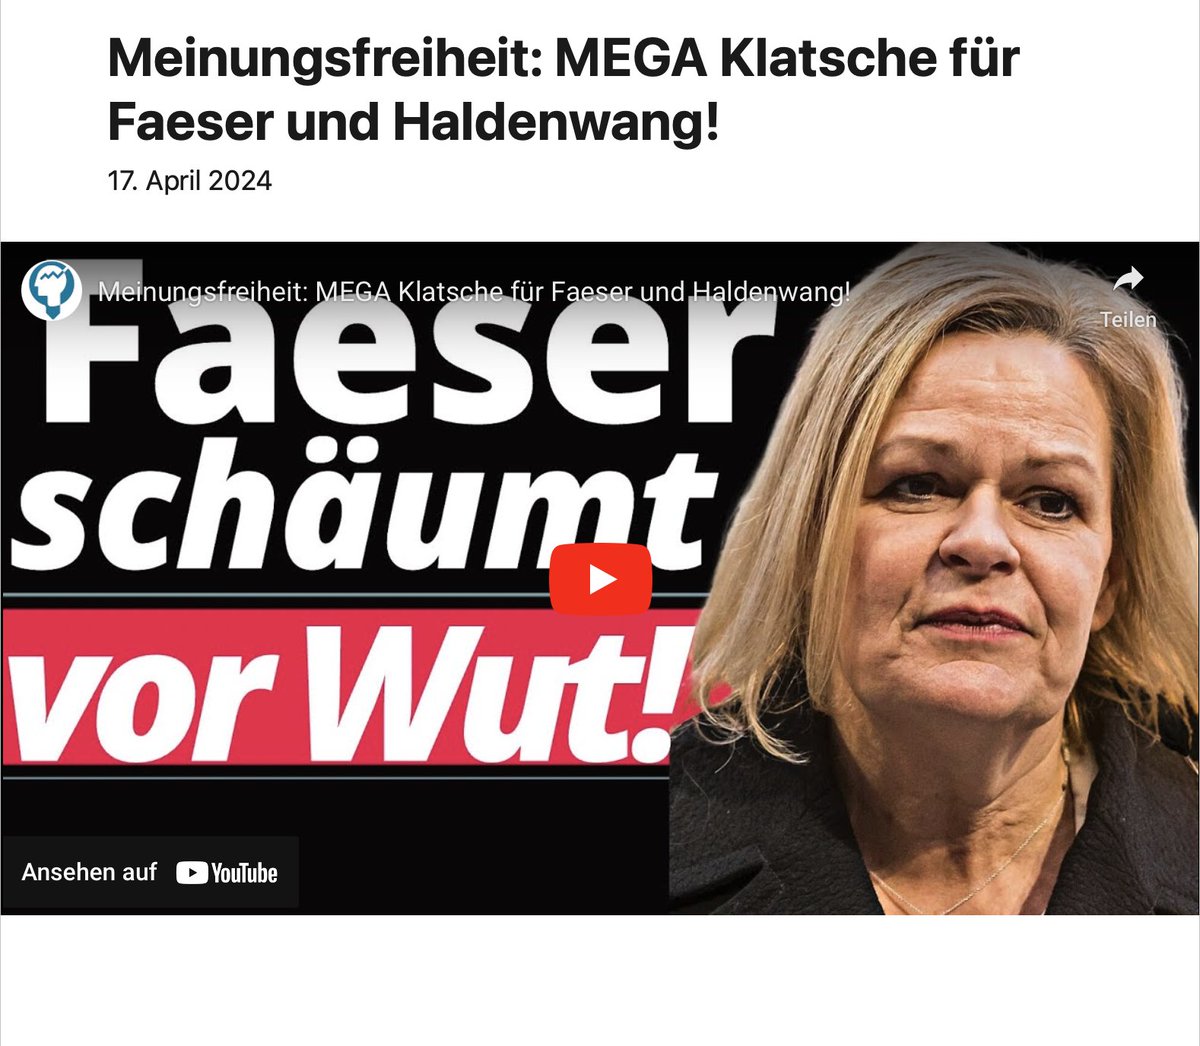 #Meinungsfreiheit: #MEGA #Klatsche für #Faeser und #Haldenwang! pressecop24.com/meinungsfreihe…